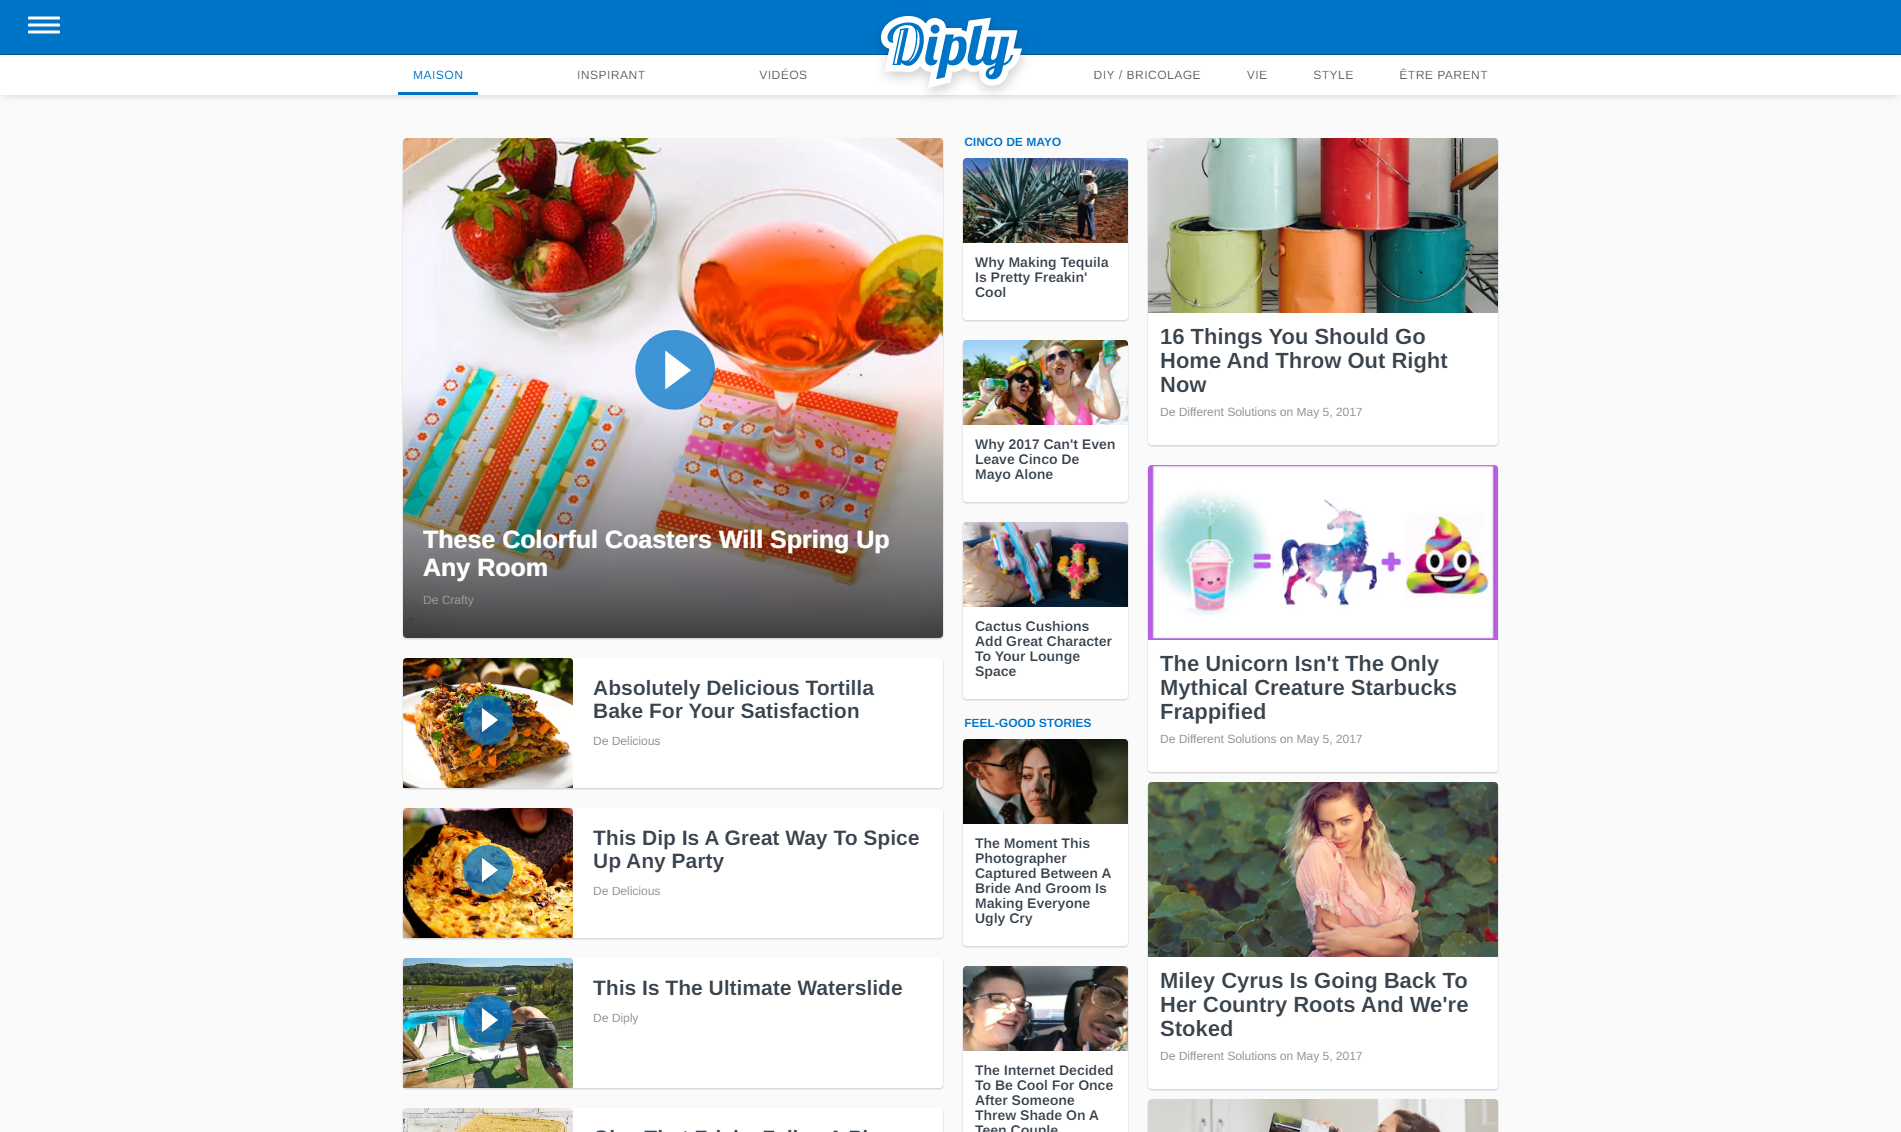 Diply.com donne des idées pour rendre votre maison agréable à vivre